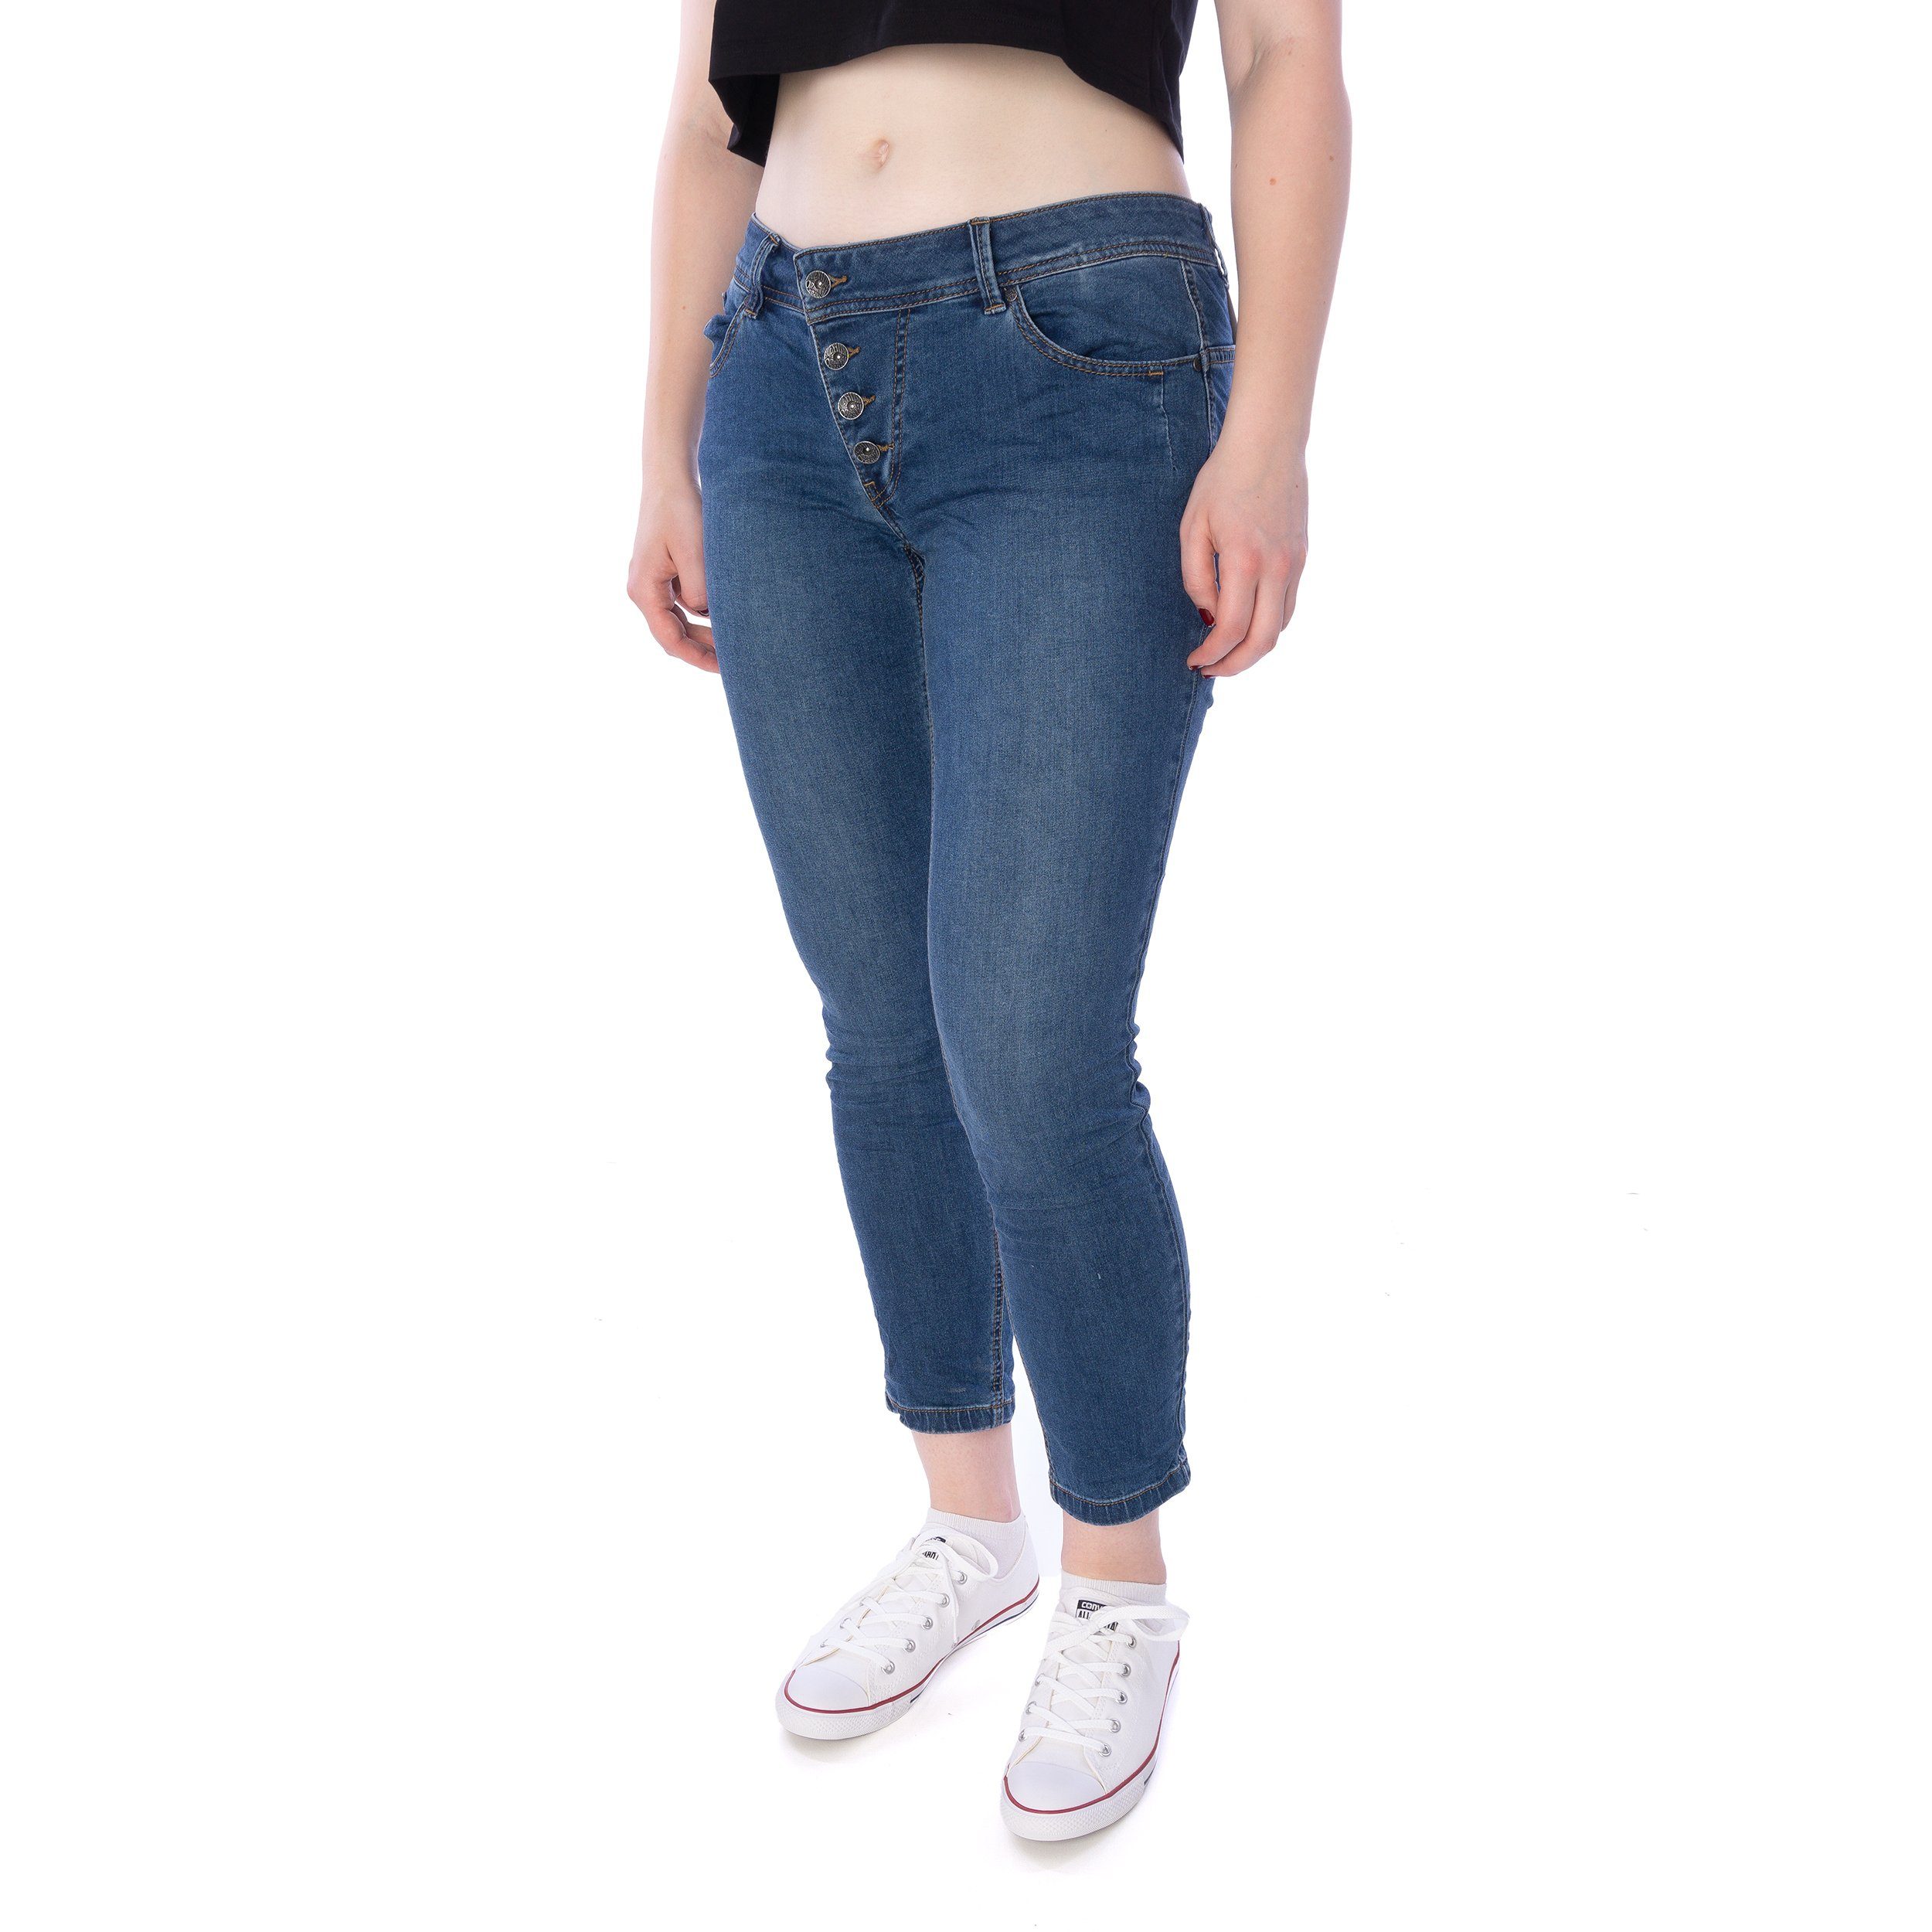 Buena Vista Slim-fit-Jeans Buena Vista 7/8 blau Hose stretch Malibu Damen denim Jeans